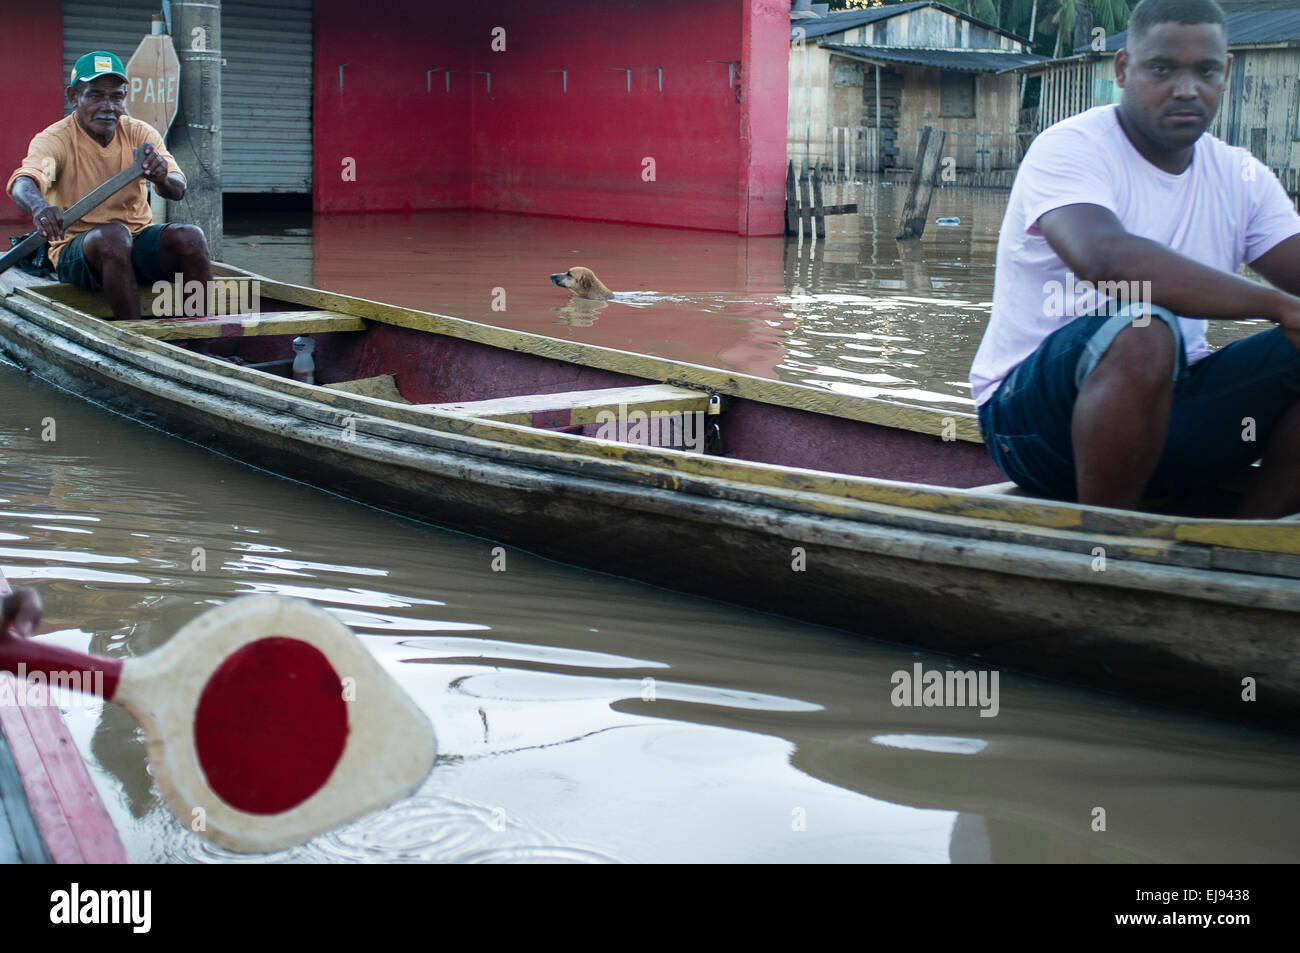 2015 Inondations en Amazonie brésilienne, le chien nage entre les bateaux dans l'inondation des rues à Novo Triangulo, district de la ville de Rio Branco, l'état d'Acre. Les inondations ont touché des milliers de personnes dans l'Etat d'Acre, dans le nord du Brésil, depuis le 23 février 2015, lorsque certaines des rivières de l'état, en particulier l'Acre, la rivière a débordé. De plus fortes précipitations a forcé les niveaux de la rivière plus haut encore, et le 03 mars 2015, le gouvernement fédéral du Brésil a déclaré l'état d'urgence dans l'état d'Acre, où les conditions d'inondations situation a été décrite comme la pire en 132 ans. Banque D'Images